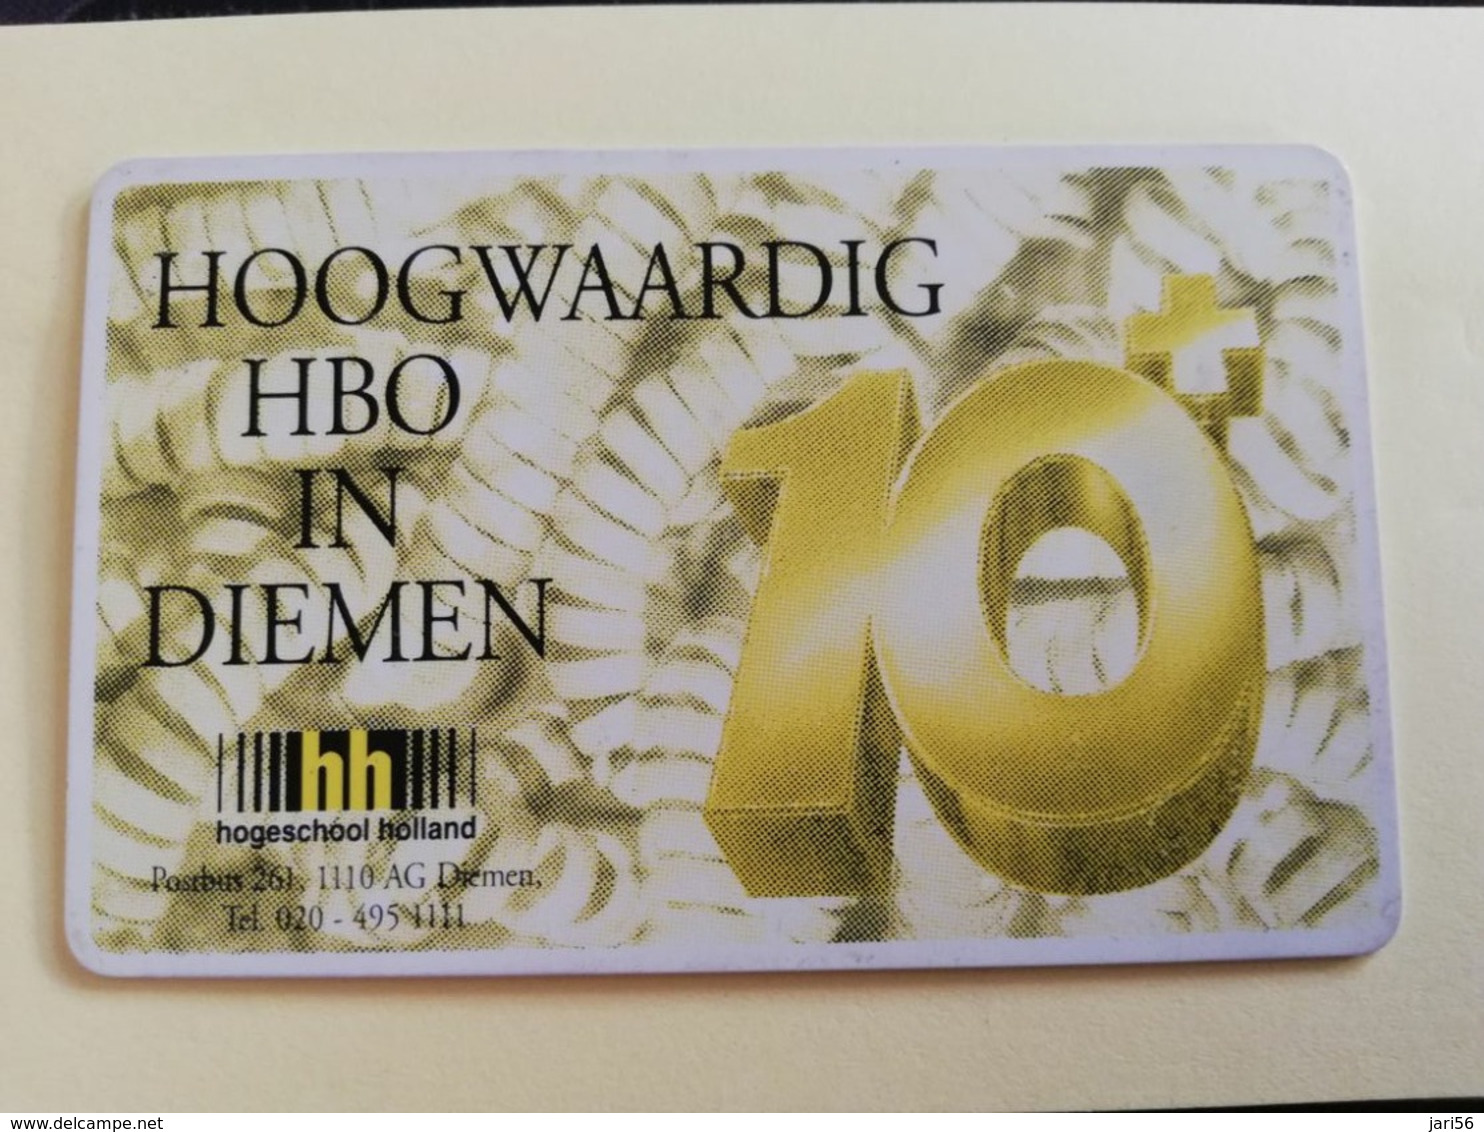 NETHERLANDS  ADVERTISING CHIPCARD HFL 5,00 CRE 131.02   HOOGWAARDIG HBO DIEMEN          Fine Used   ** 3188** - Privat